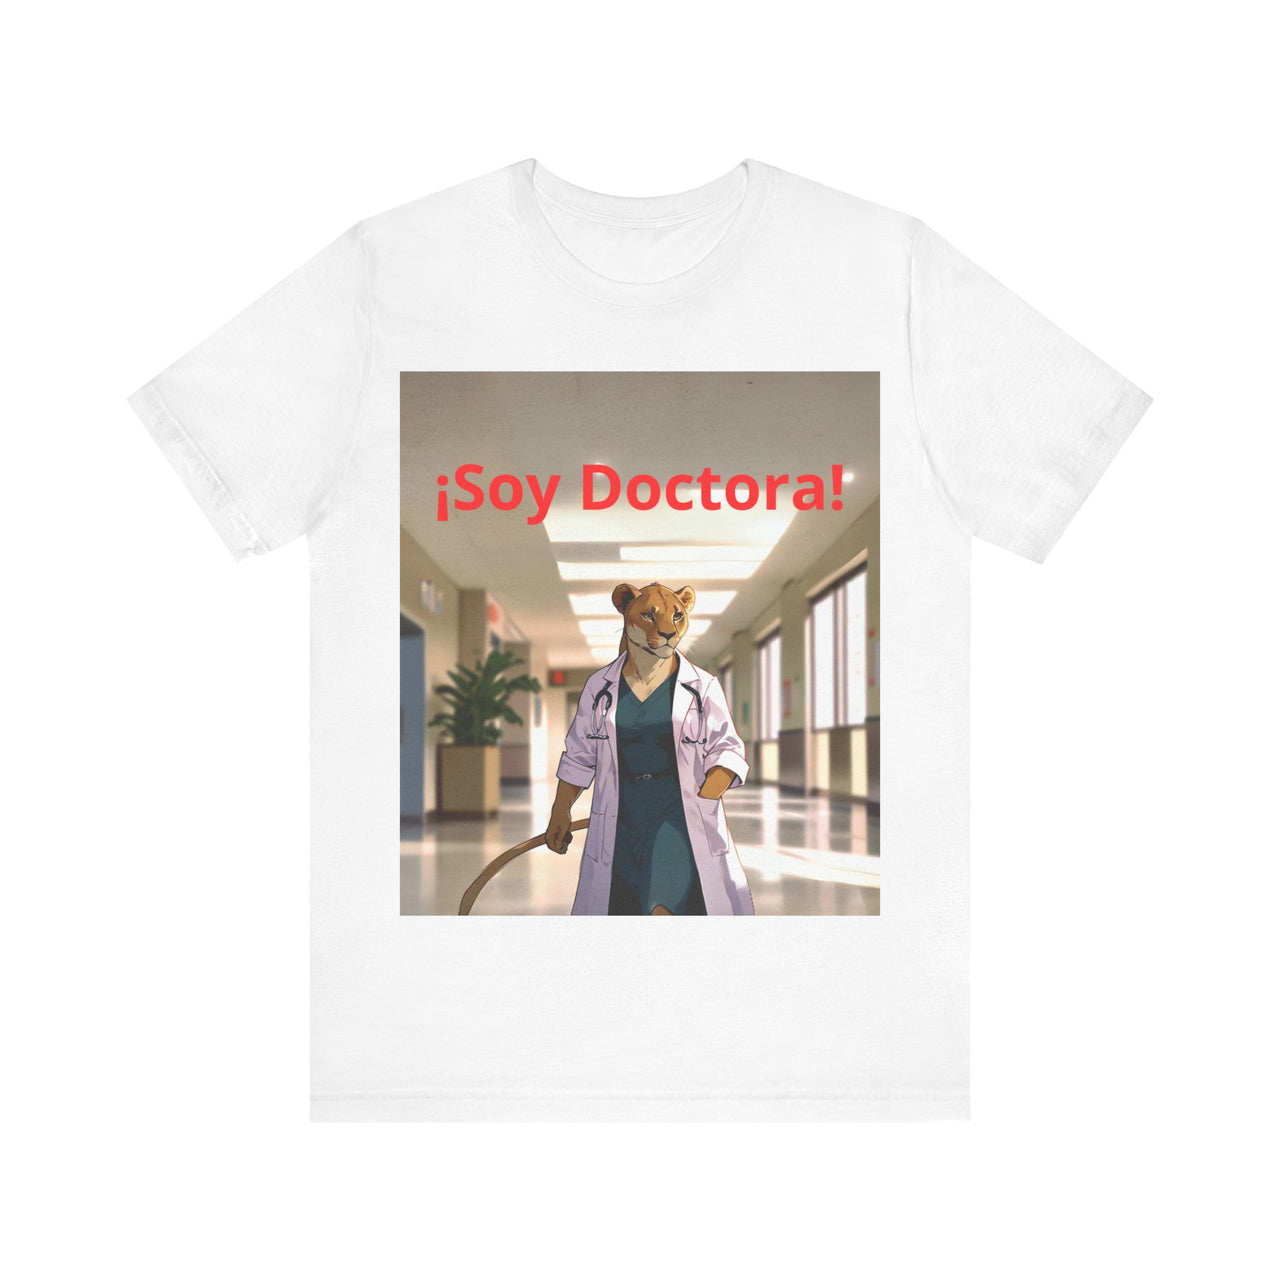 Camiseta unisex "¡Soy Doctora!", camiseta ideal para doctoras recién licenciadas